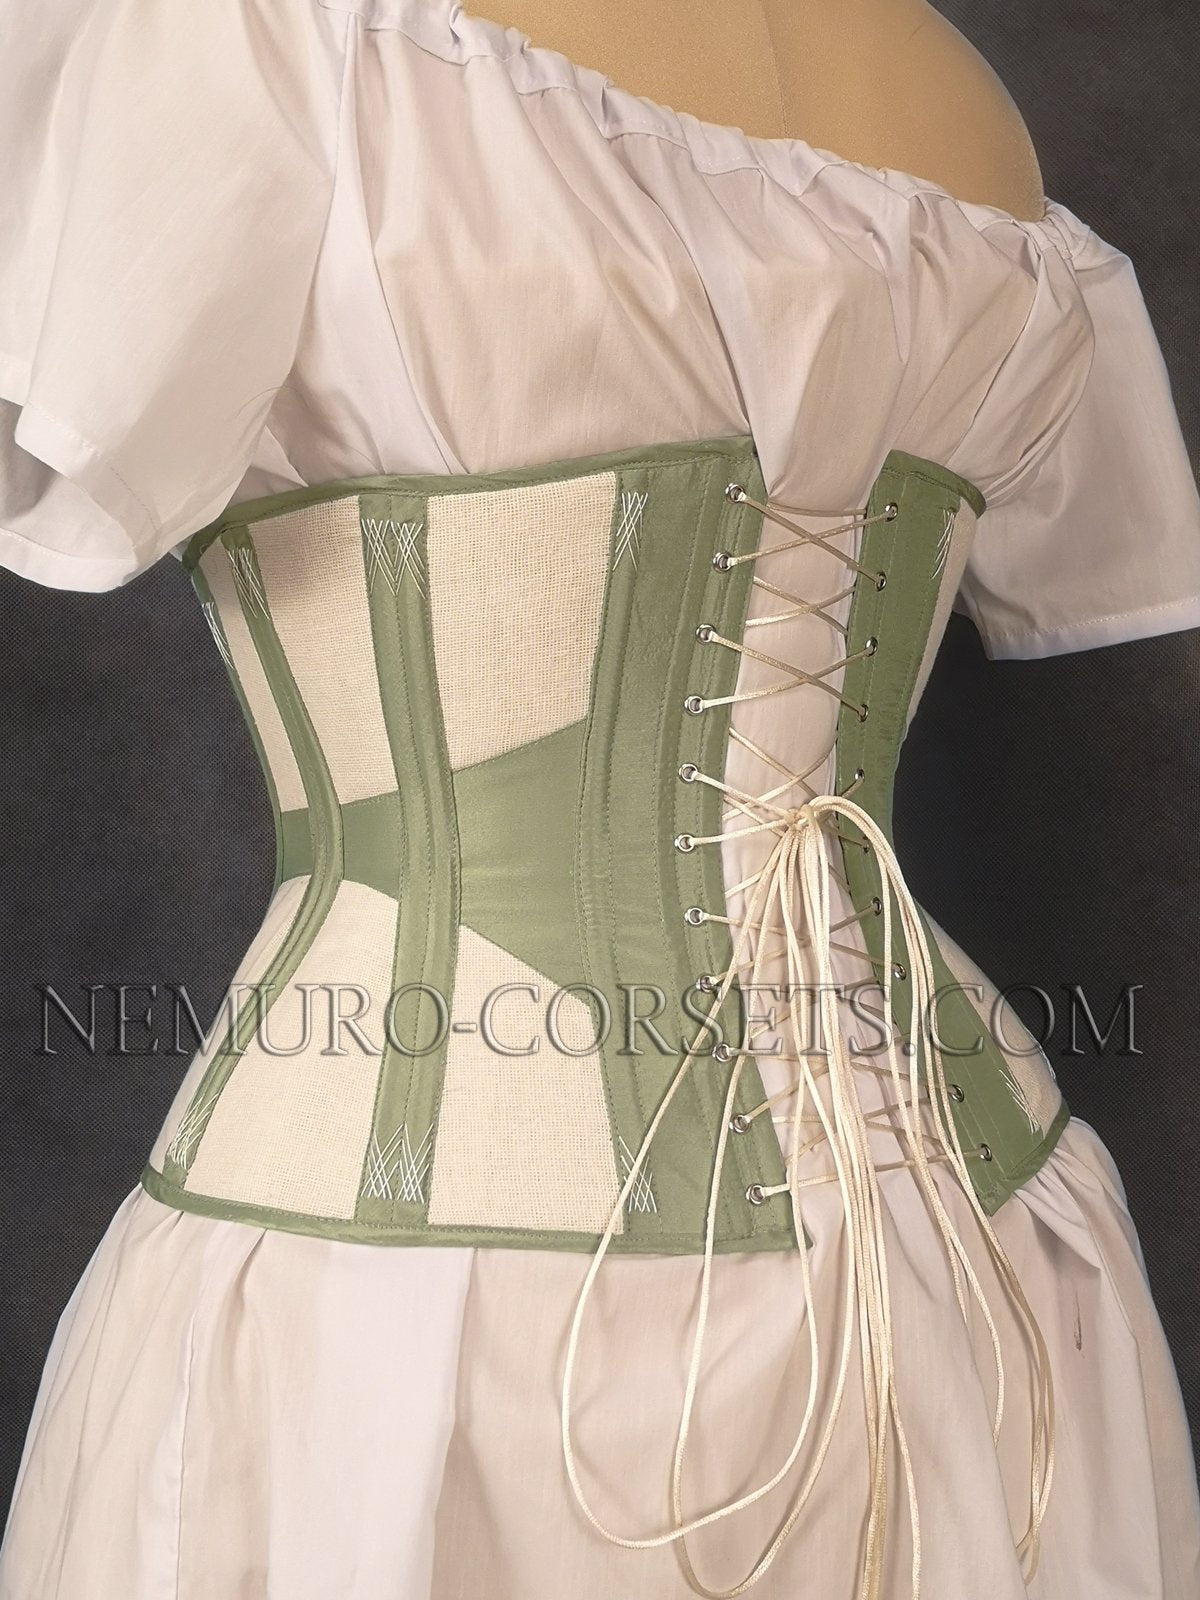 https://nemuro-corsets.com/cdn/shop/products/IMG_20201021_204921-2_1024x1024@2x.jpg?v=1605796393